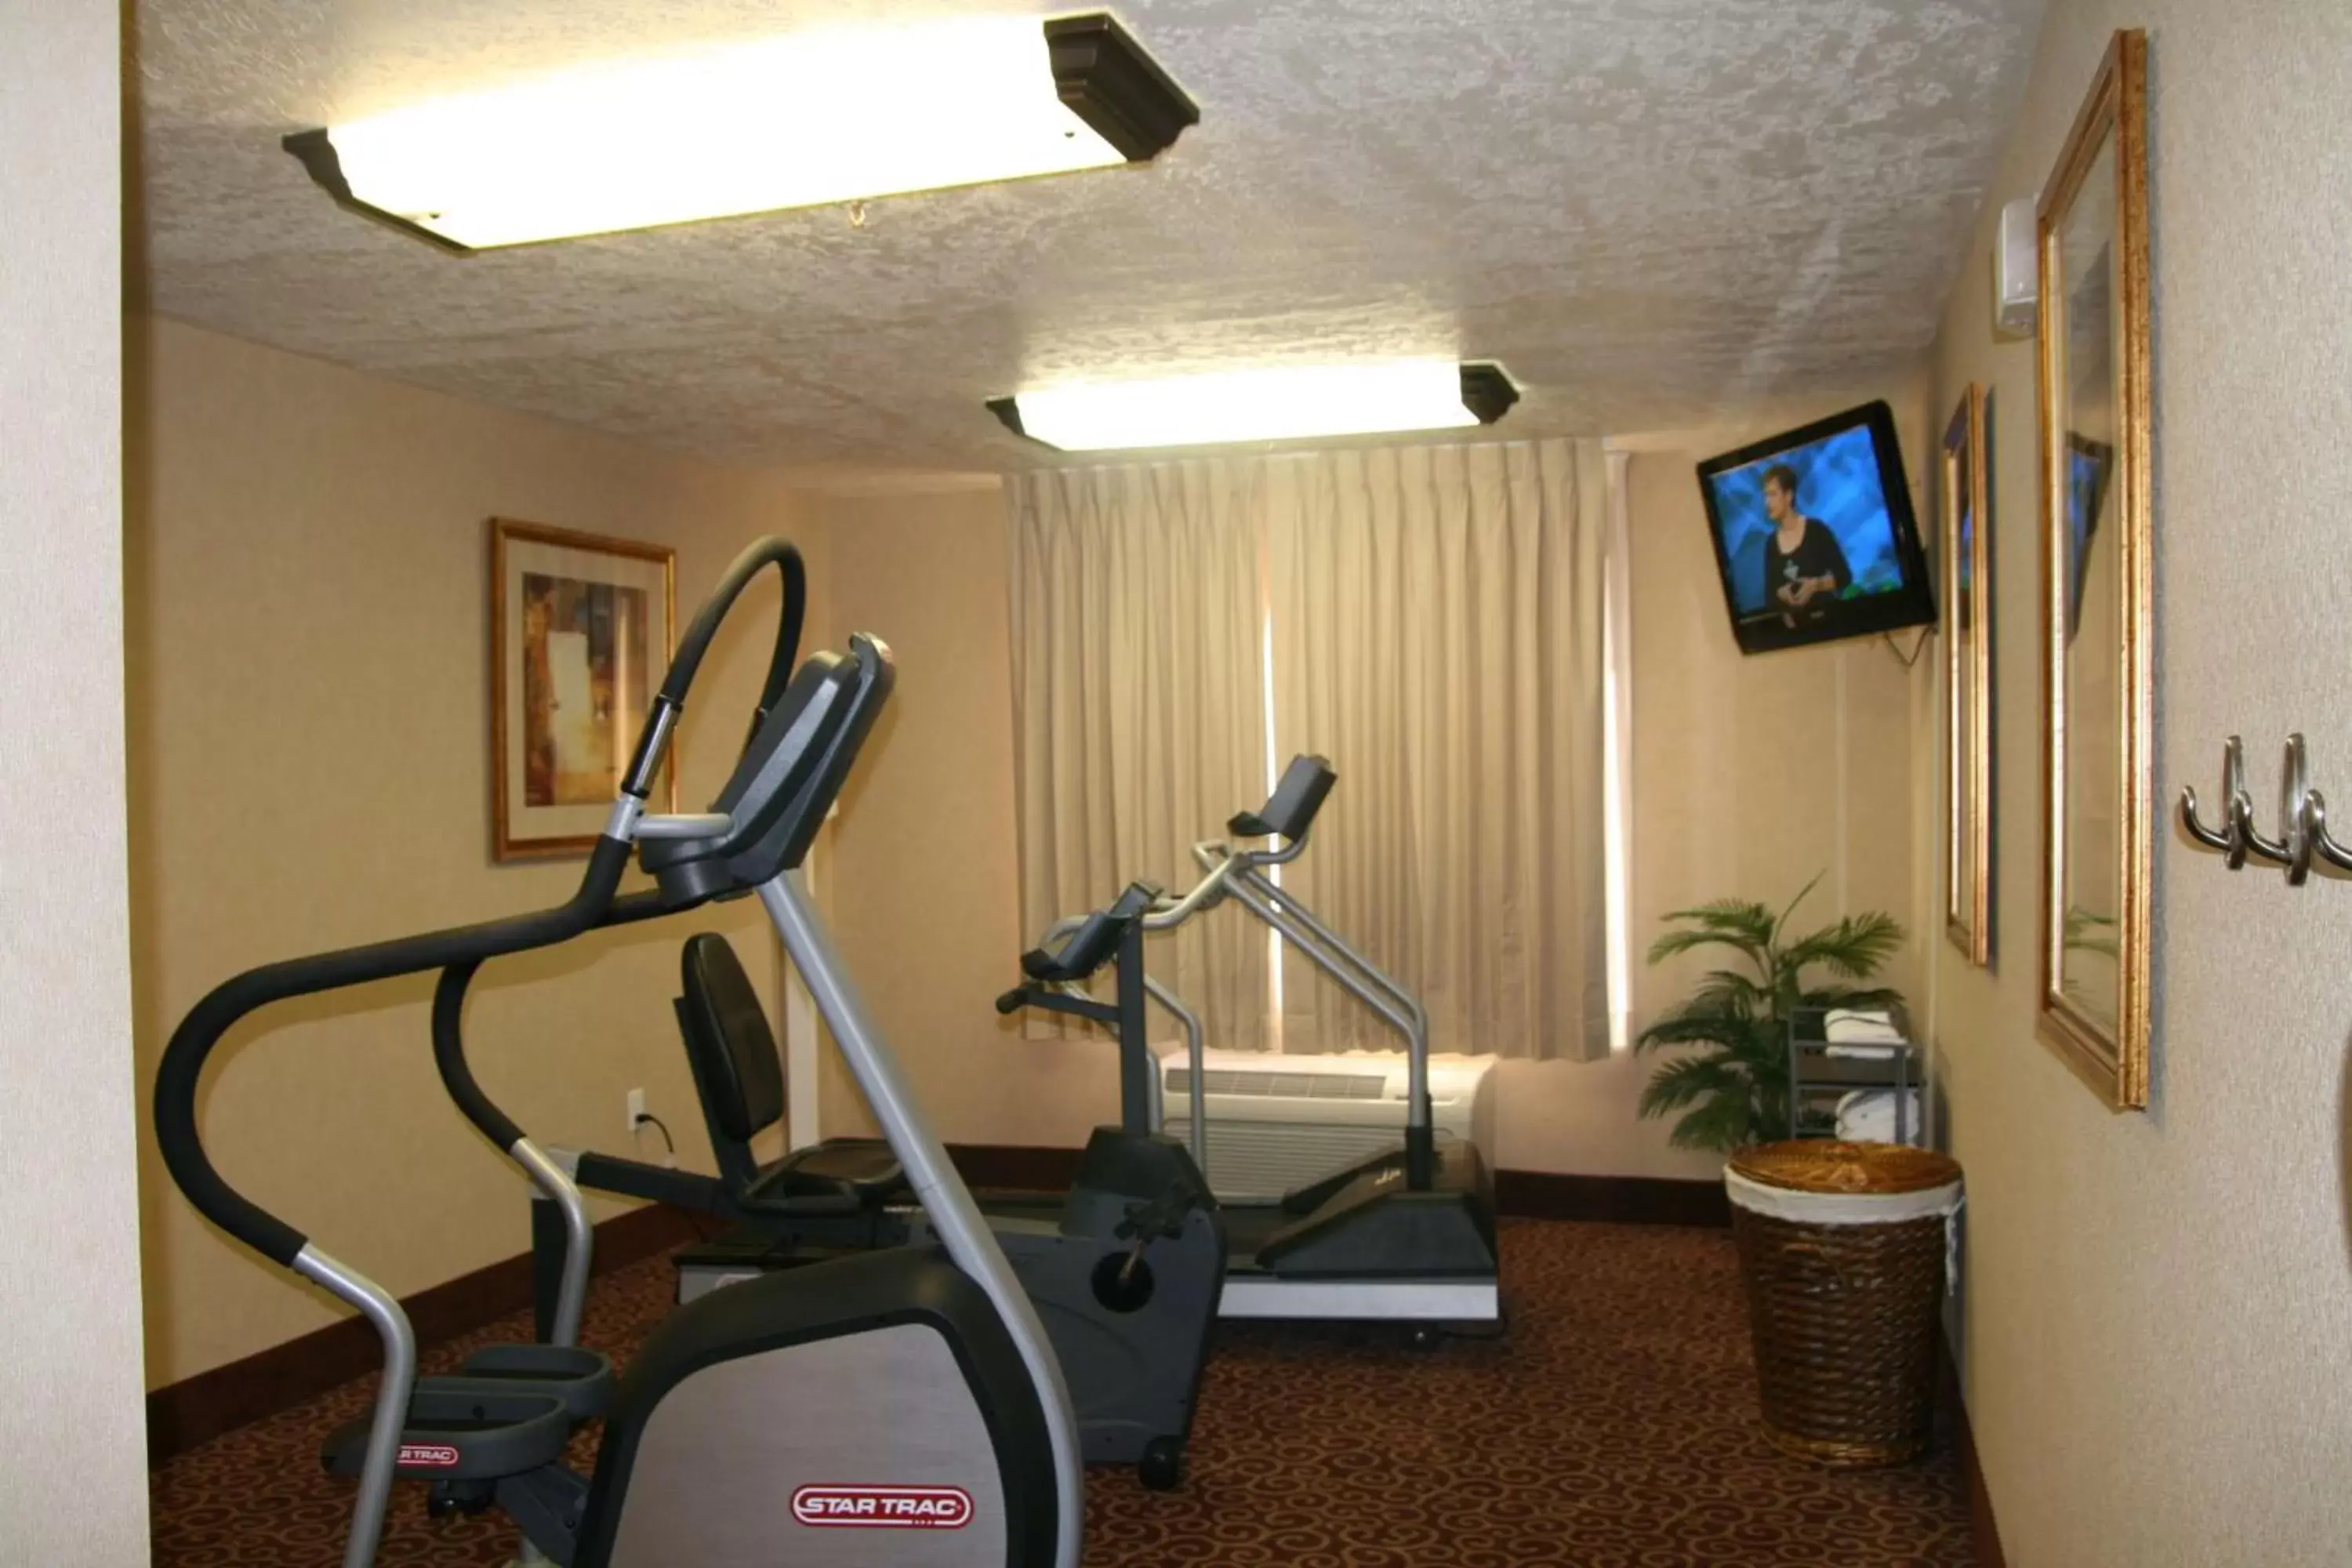 Fitness centre/facilities, Fitness Center/Facilities in Hampton Inn Sierra Vista